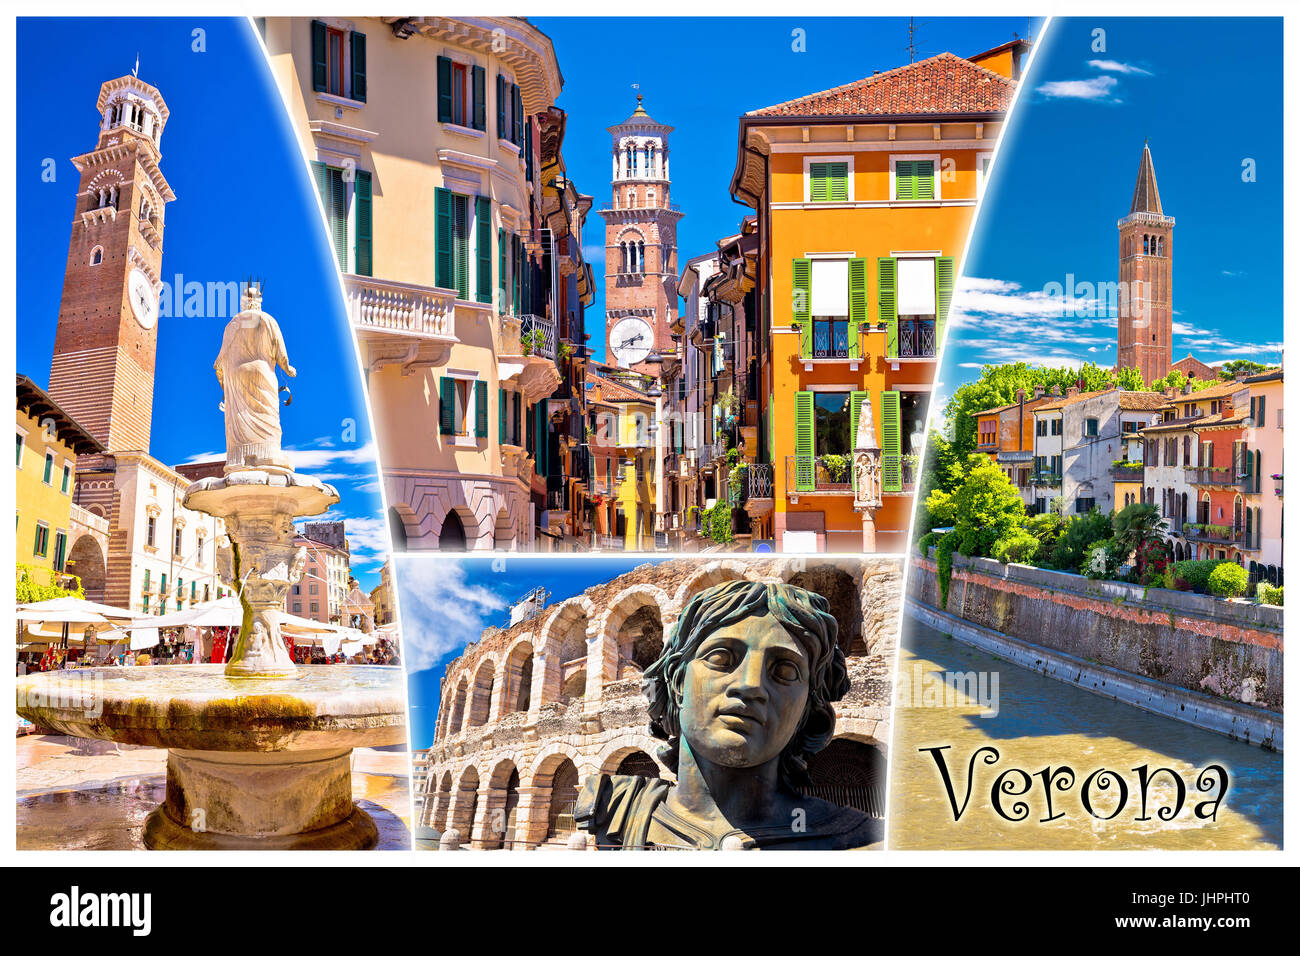 Verona punti di riferimento turistici cartolina con etichetta, regione italiana Veneto Foto Stock